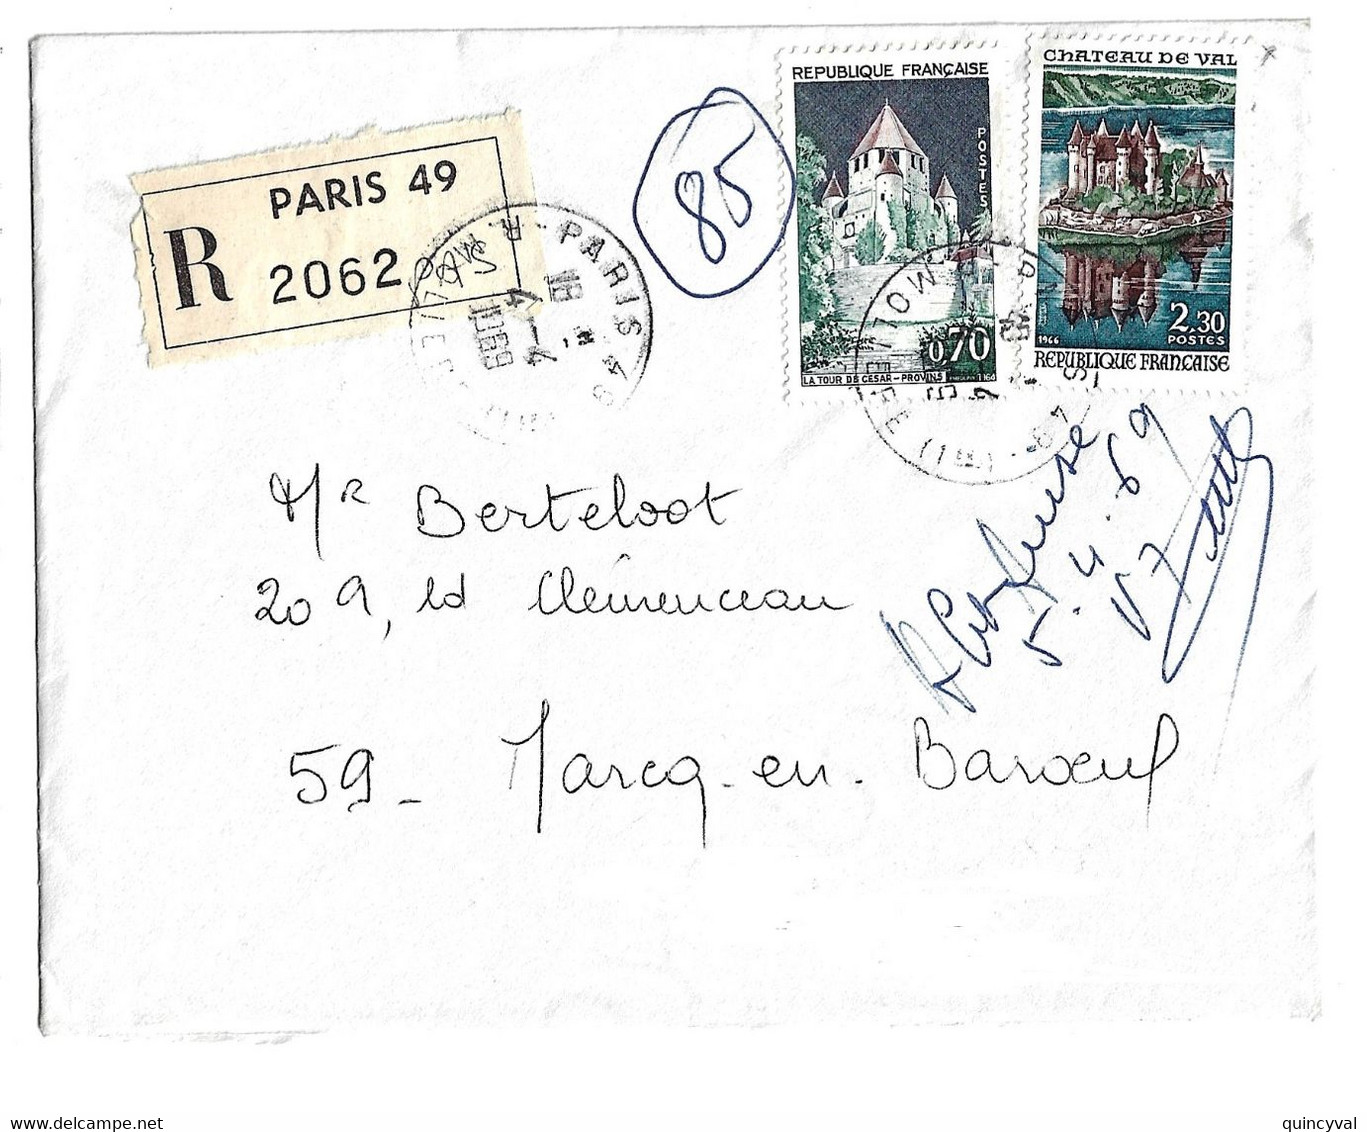 PARIS 48 Lettre Recommandée 70c Provins 2,30 F Château De Val Yv 1426 1540 Ob 4 4 1969 Etiquette Reco - Briefe U. Dokumente